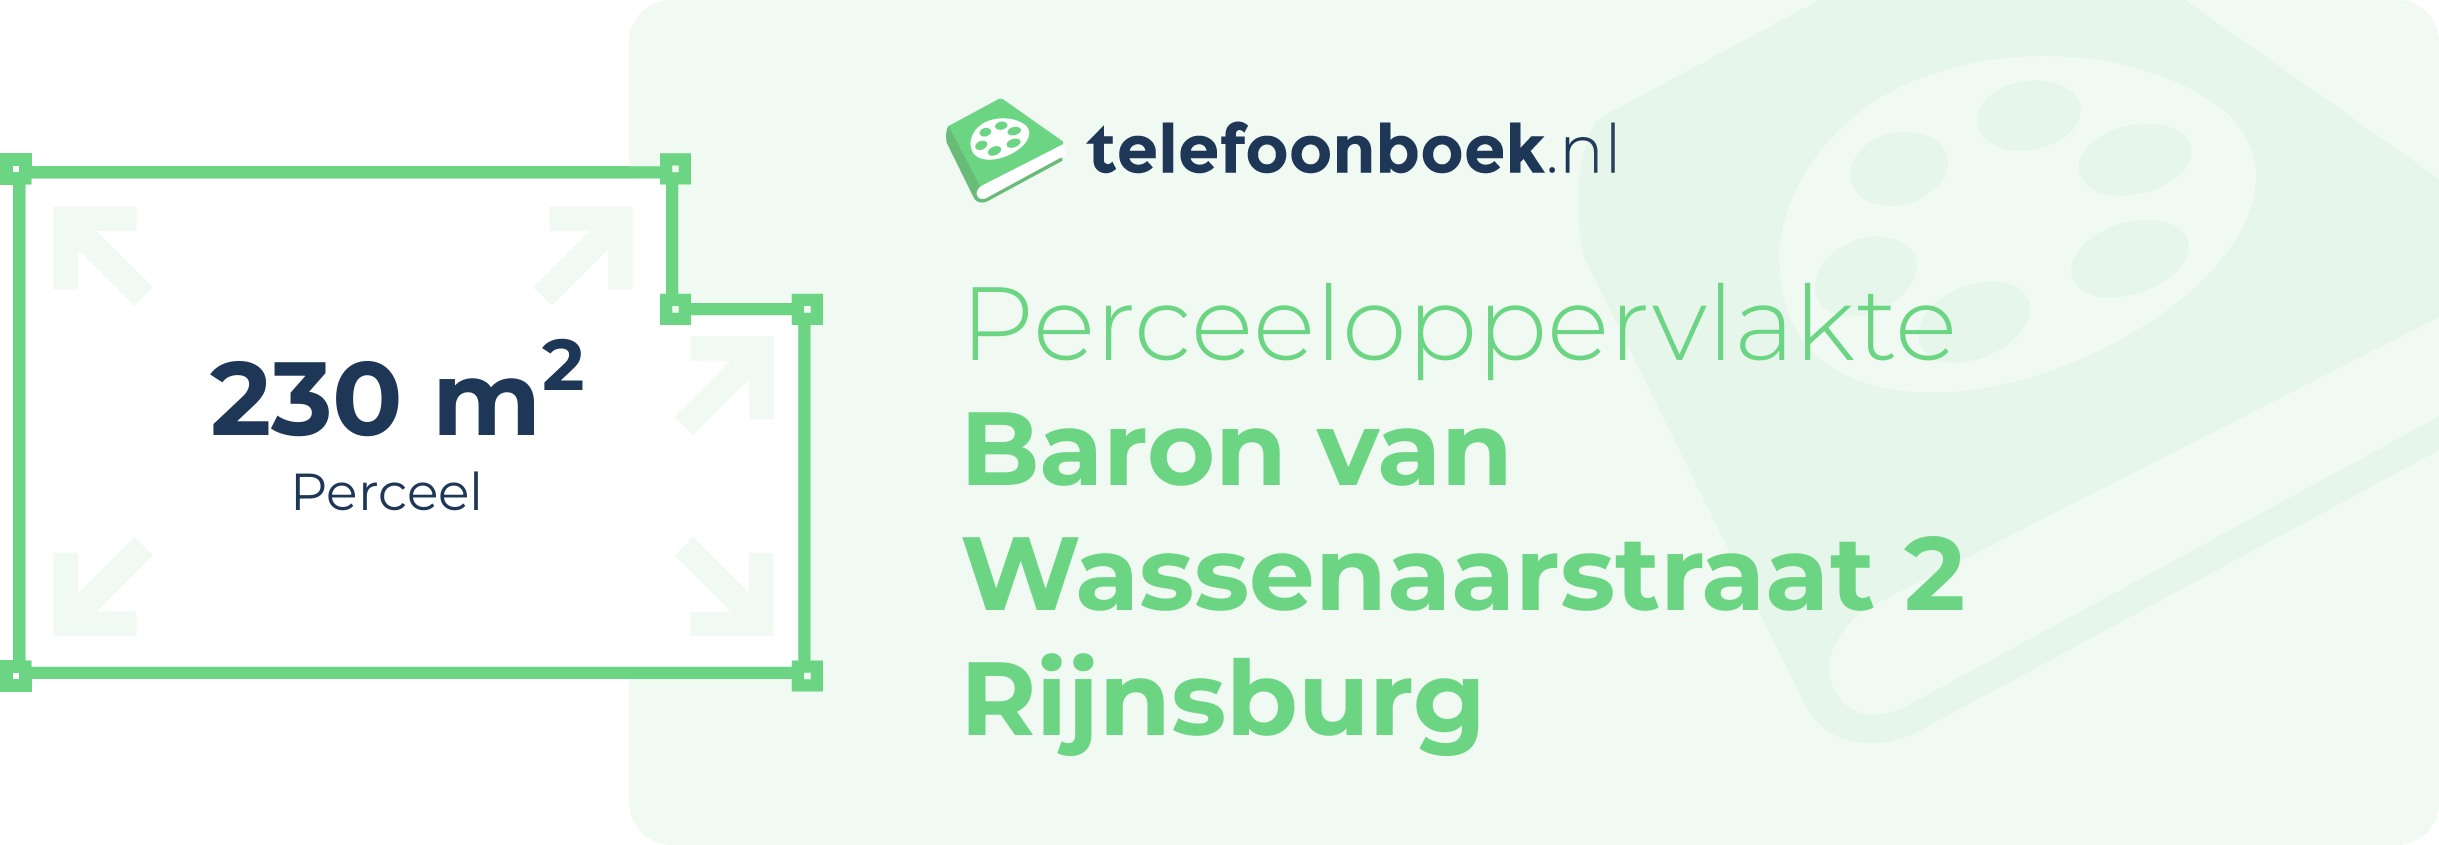 Perceeloppervlakte Baron Van Wassenaarstraat 2 Rijnsburg